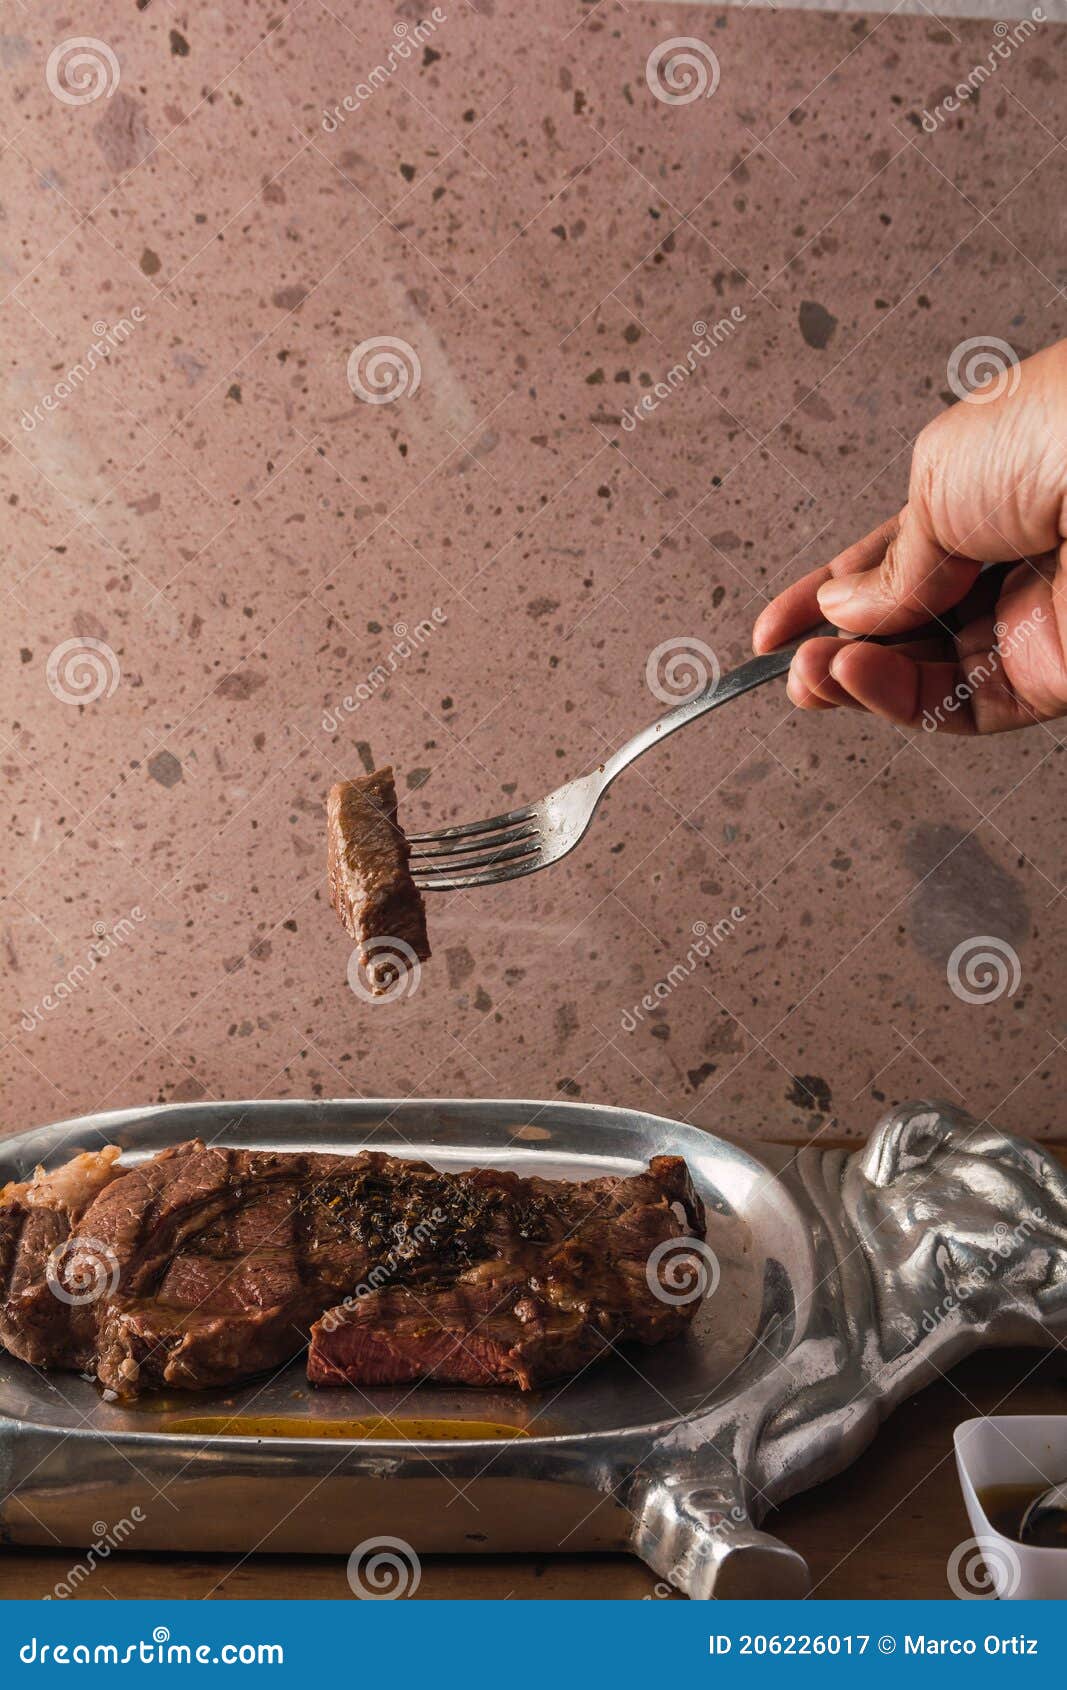 cut of meat `aguja norteÃÂ±a sonora`, served on a silver plate in the  of a cow 9